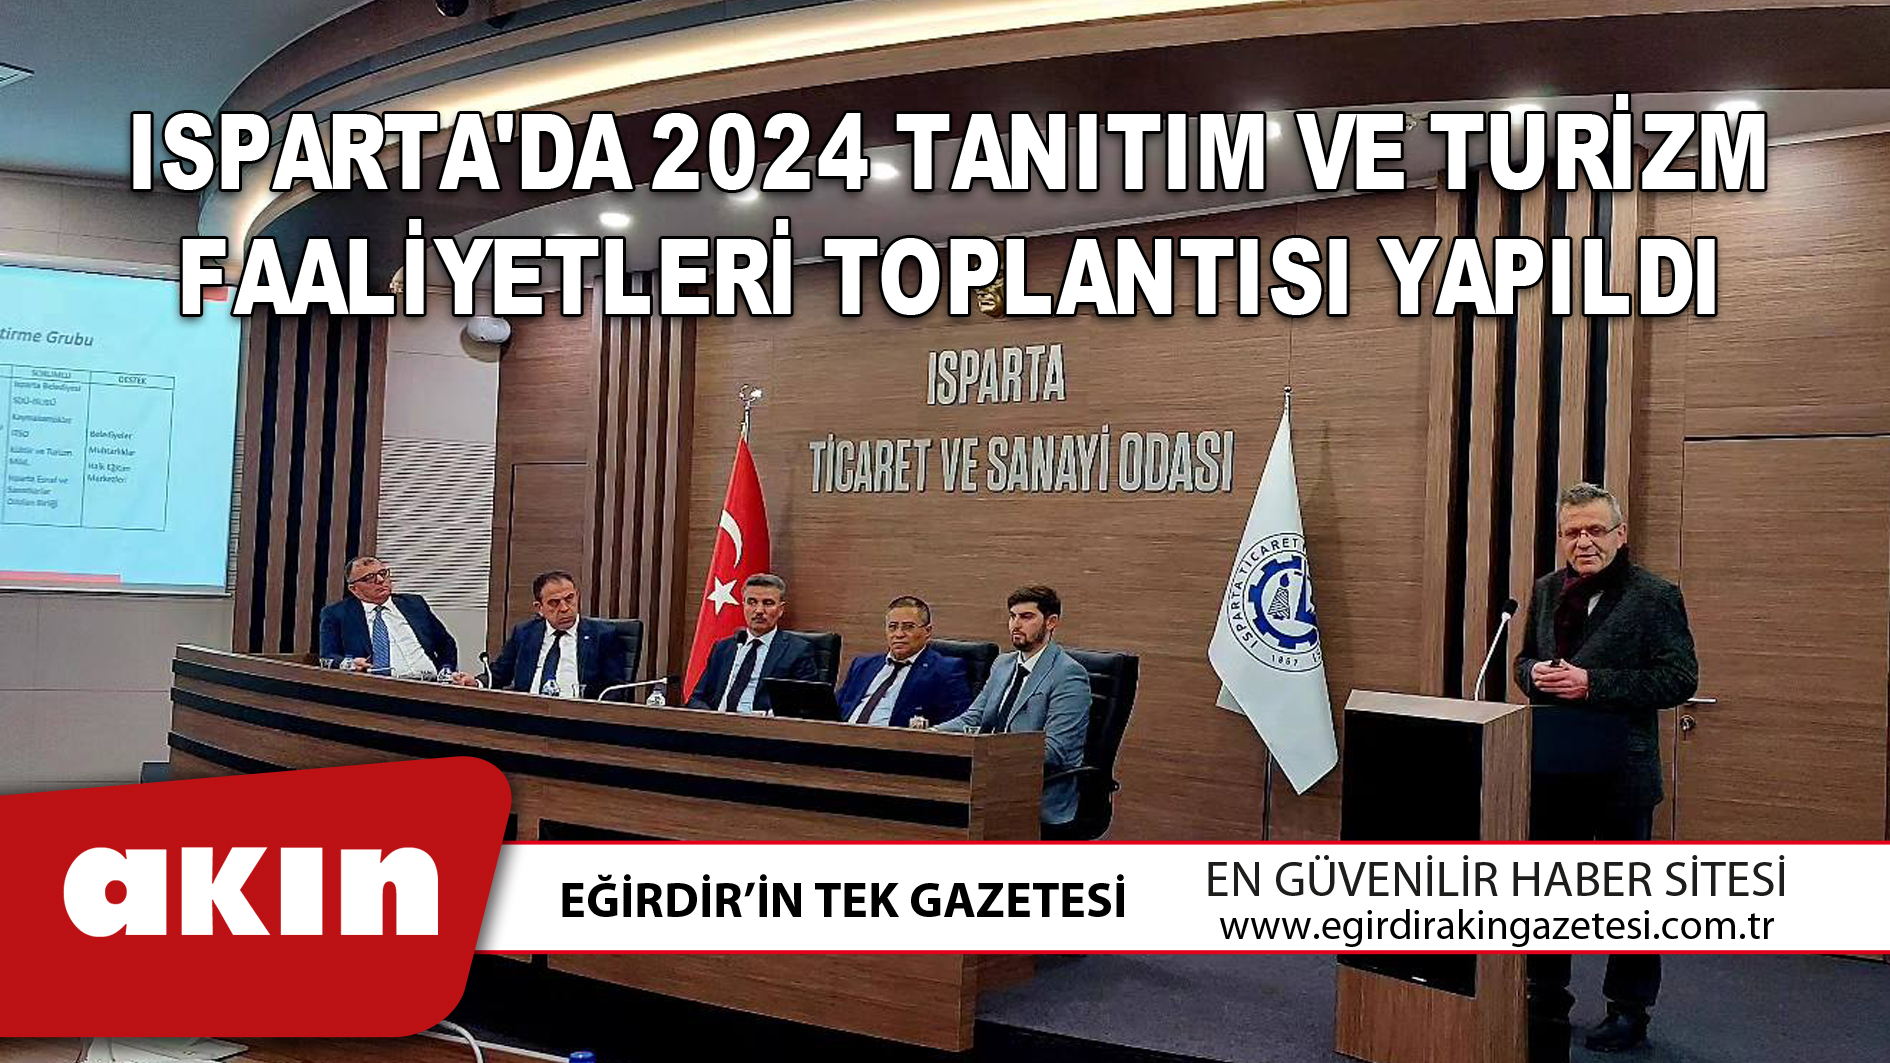 Isparta'da 2024 Tanıtım Ve Turizm Faaliyetleri Toplantısı Yapıldı